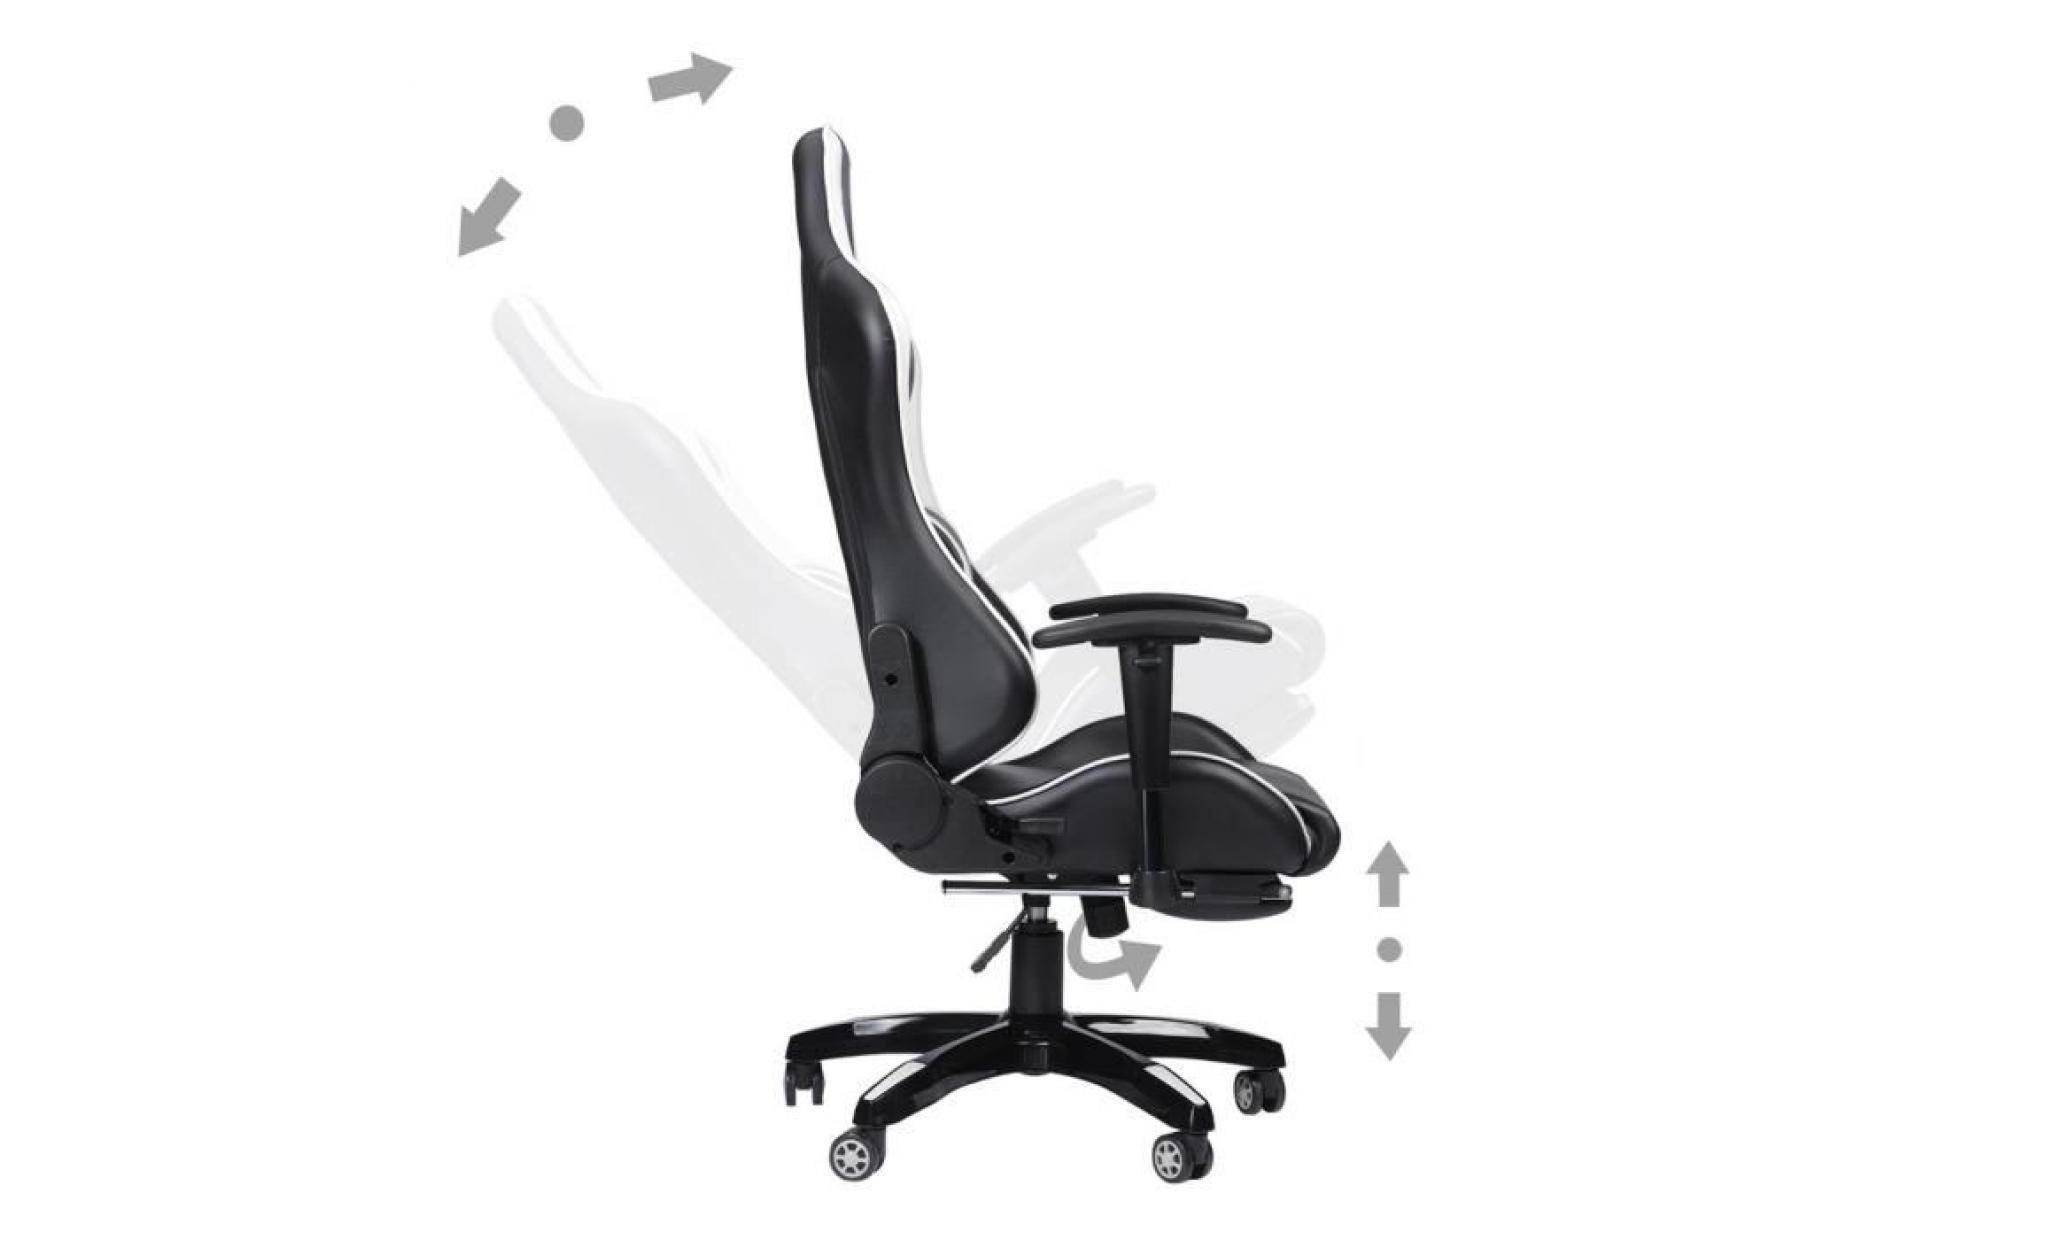 gloire du roi chaise de jeu fauteuil de bureau façon siège baquet rallye noir et blanc avec cuir souple pour plaisir pas cher